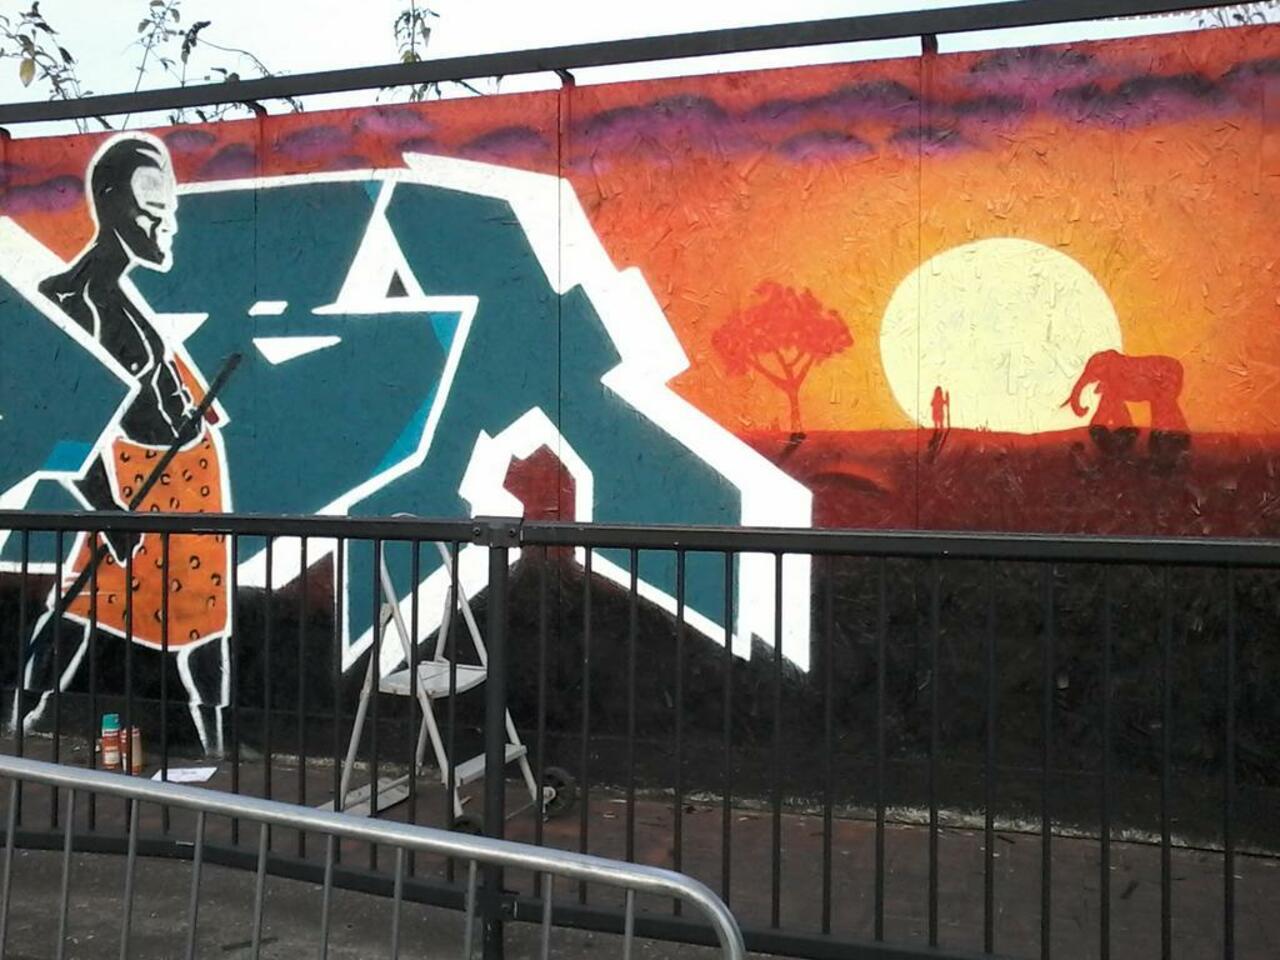 Mandela mural in progress for Freedom festival Hull with Full Flava #FreedomFestHull #Madiba #Mandela #Graffiti #Art http://t.co/SLDtbrU6BM